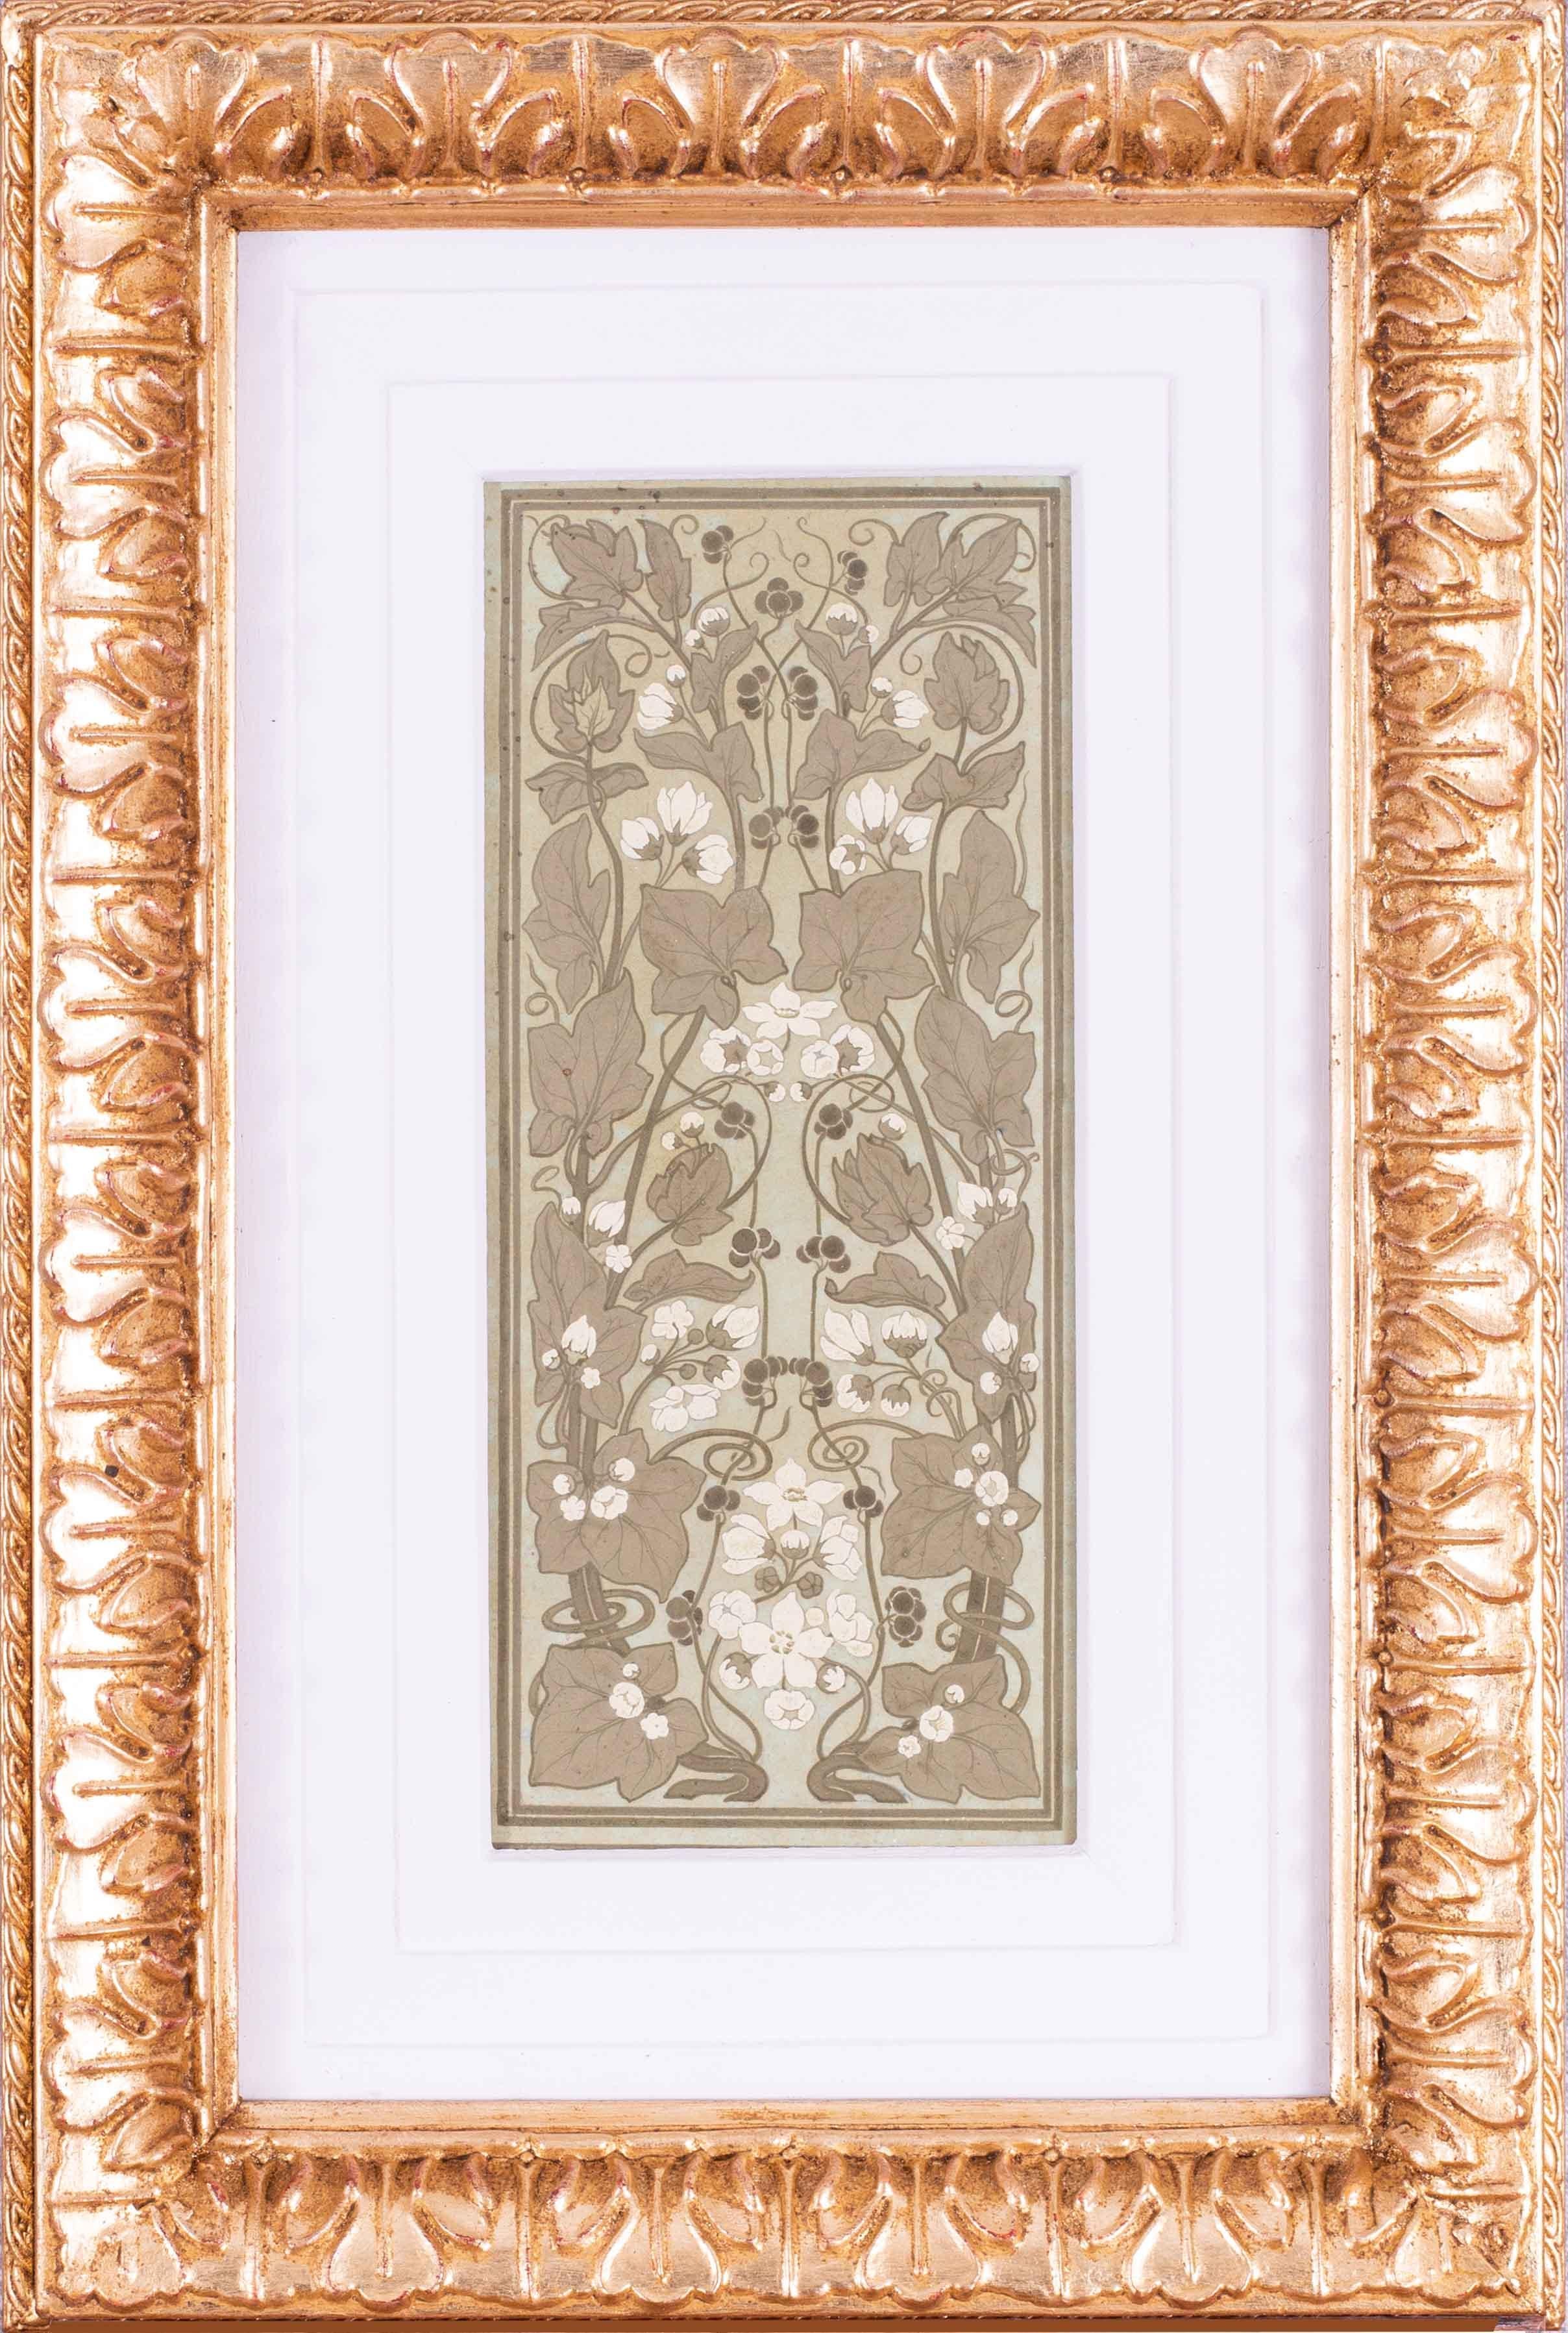 Motif oblong représentant du lierre en fleurs, réalisé par un artiste britannique du début du 20e siècle.